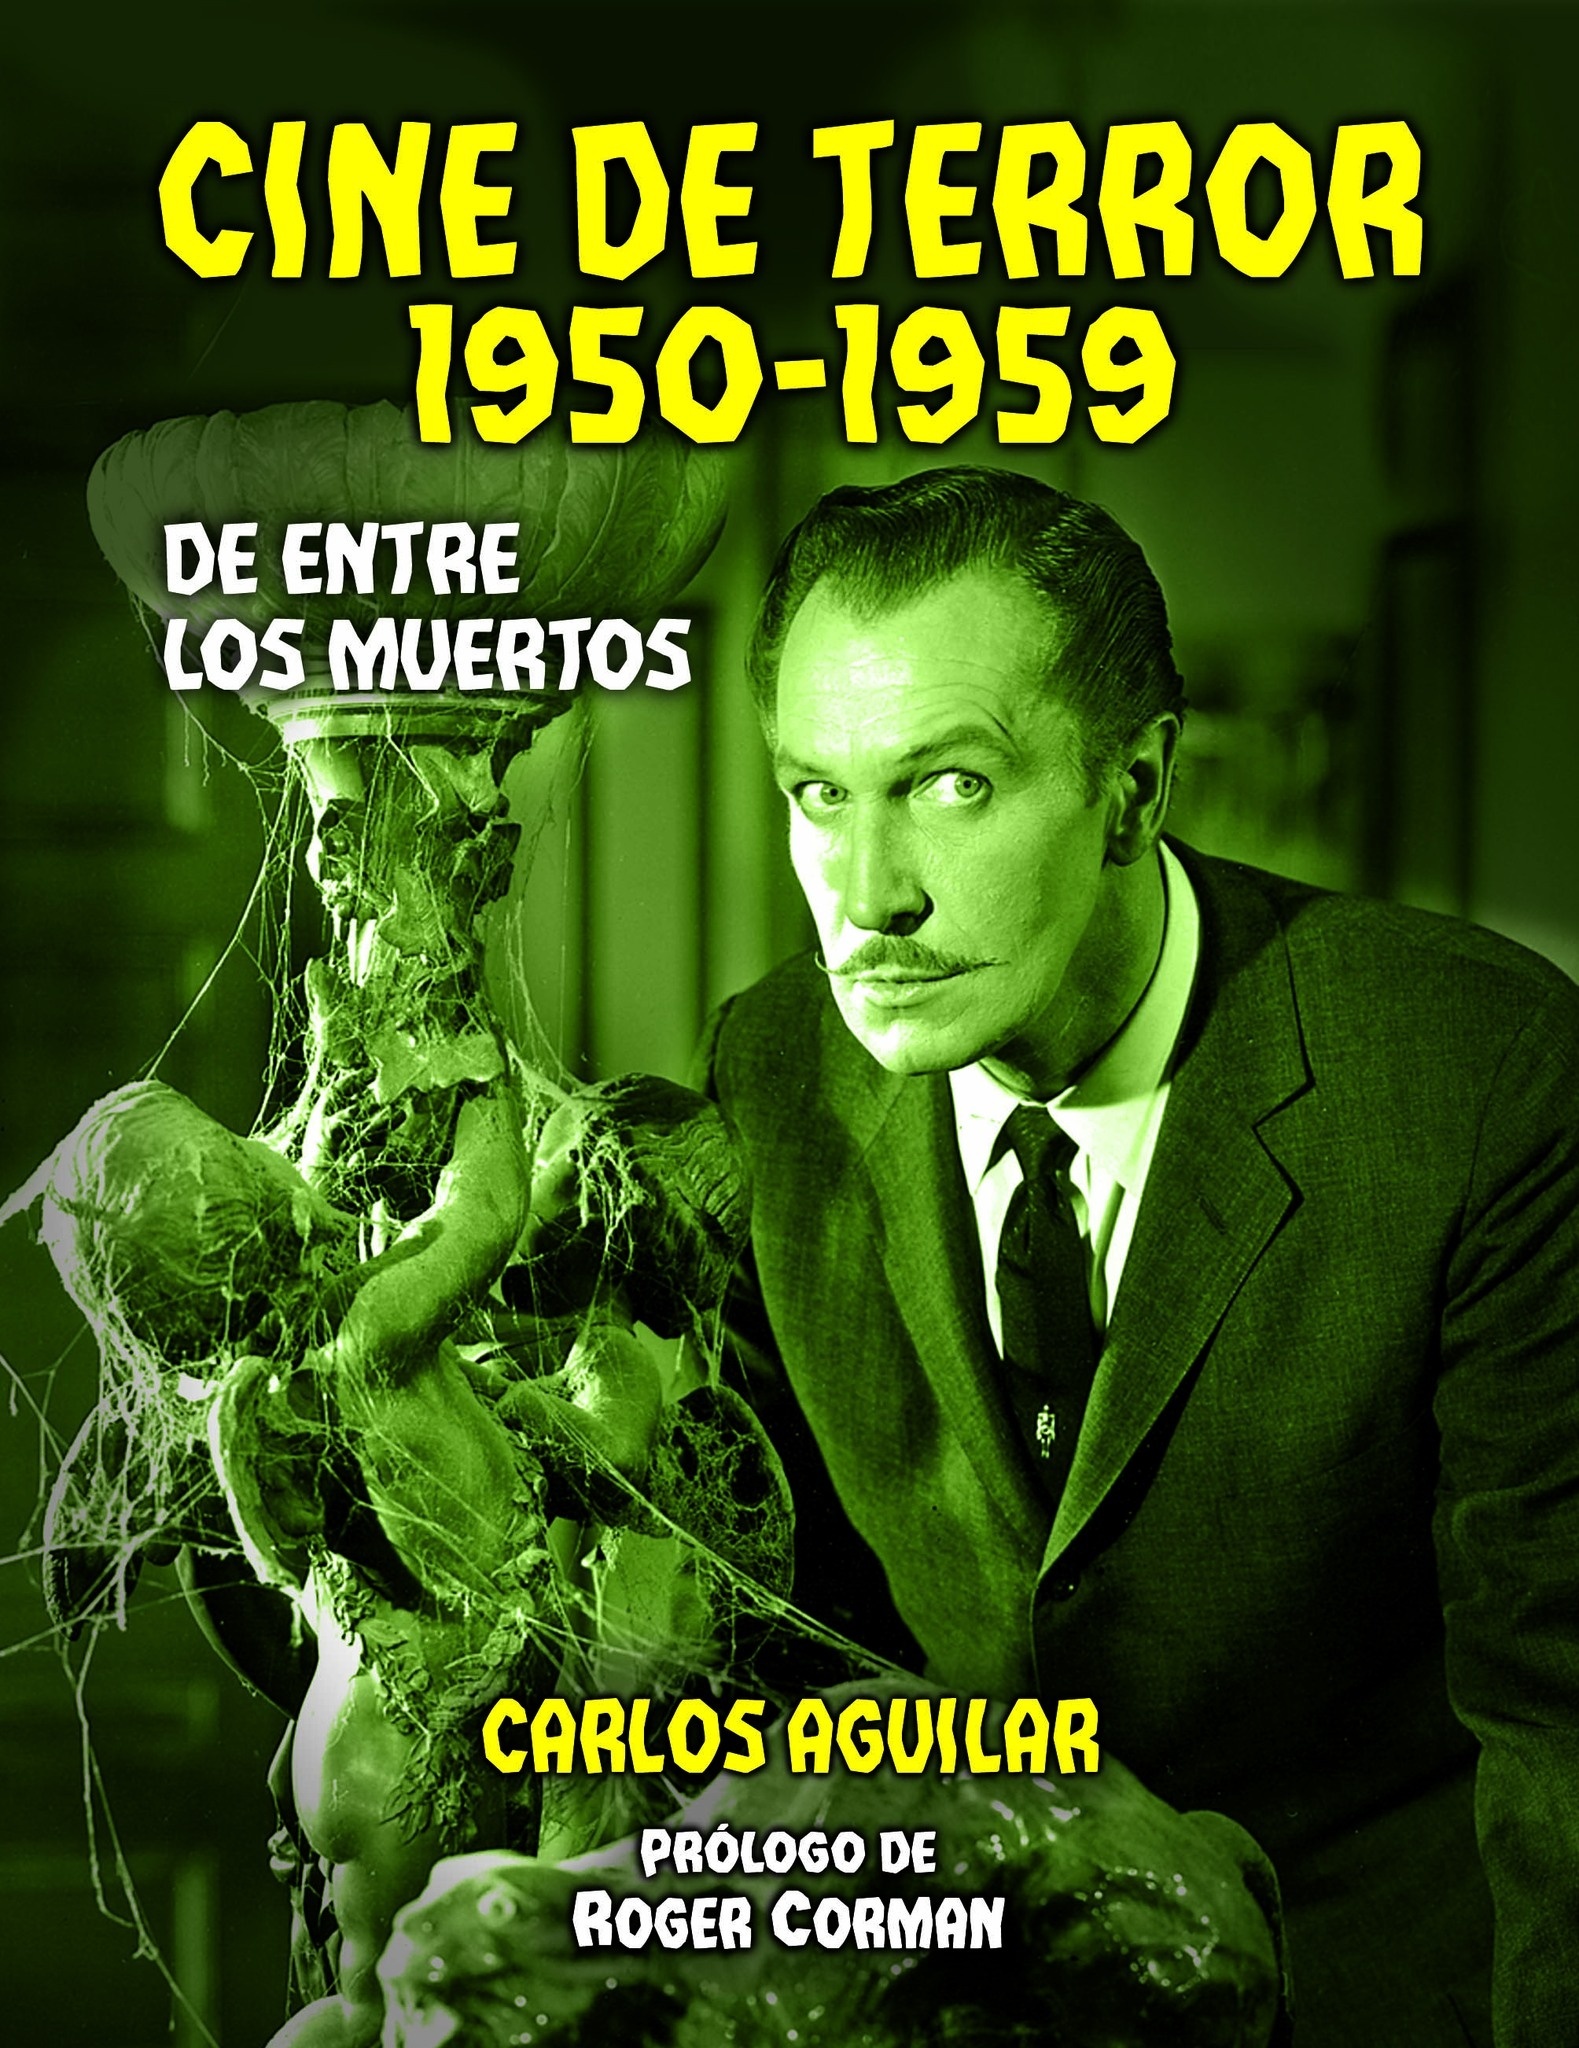 Cine de terror 1950-1959 "De entre los muertos". 